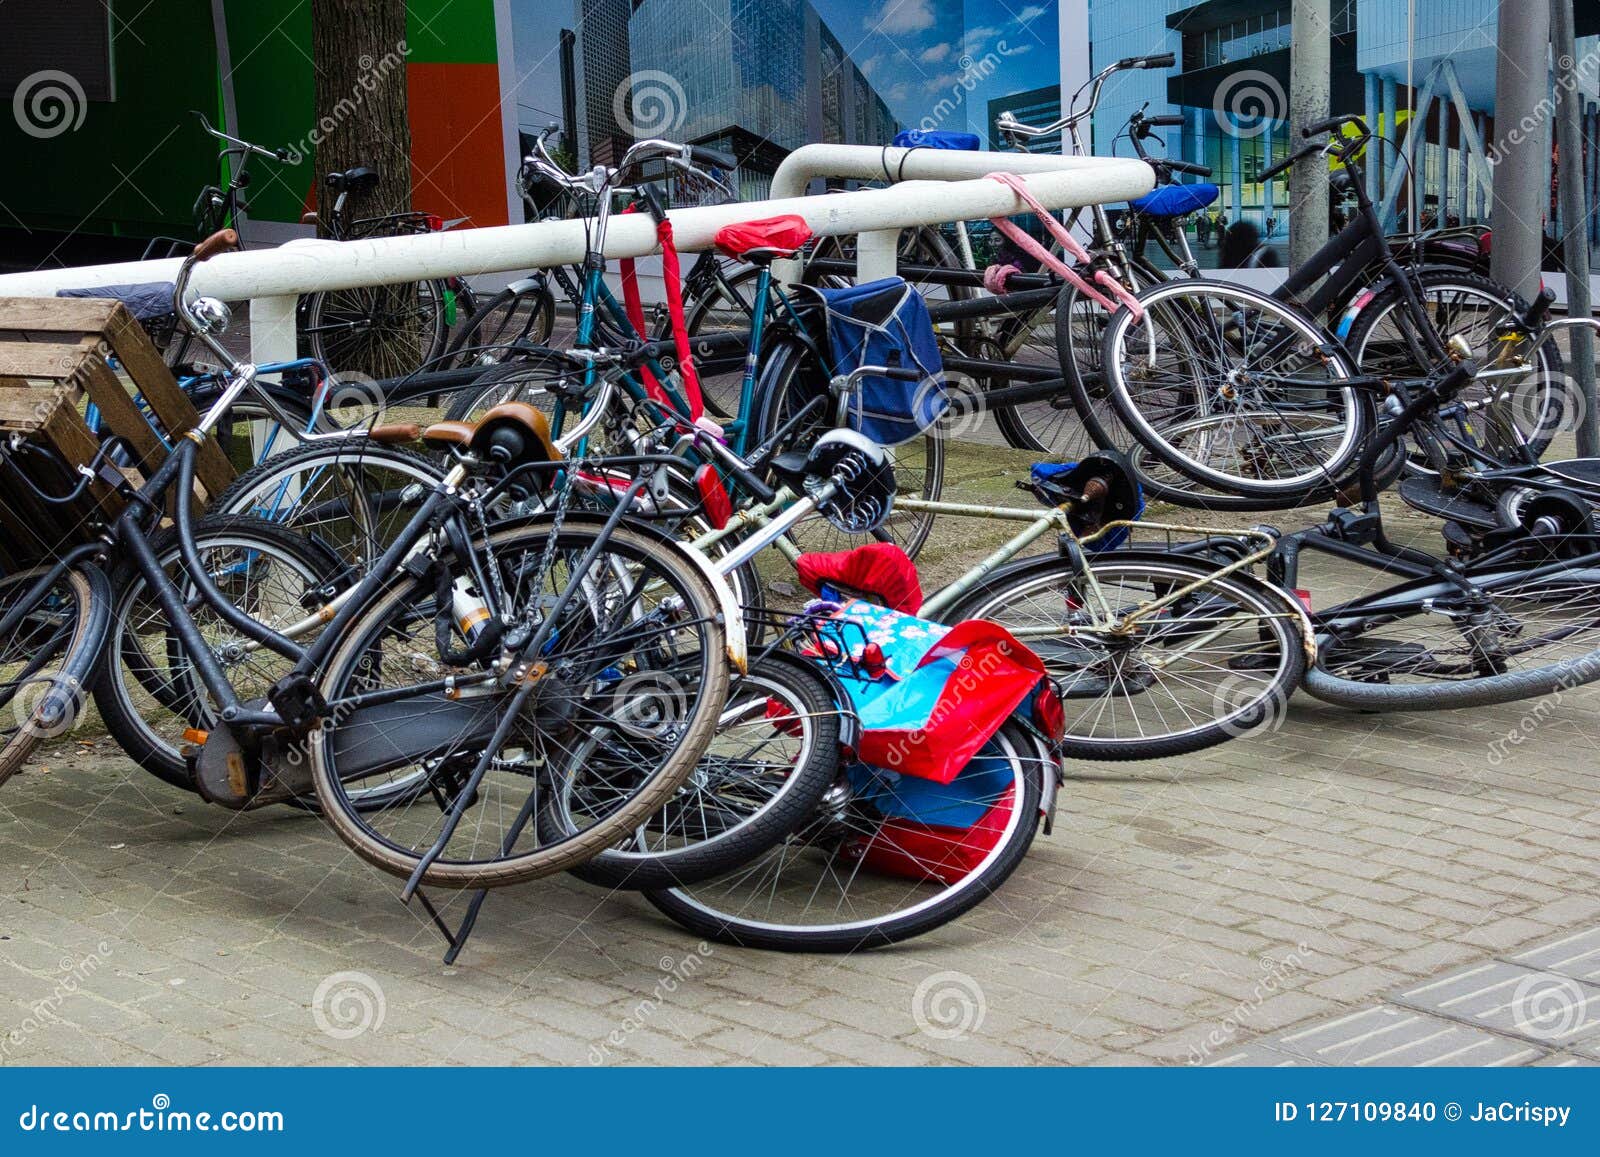 Broke the bike. Велосипед лежит у тротуара. Лежащий велосипед в деревне. Много велосипедов валяются. Лежат велосипеды Вознесенский.